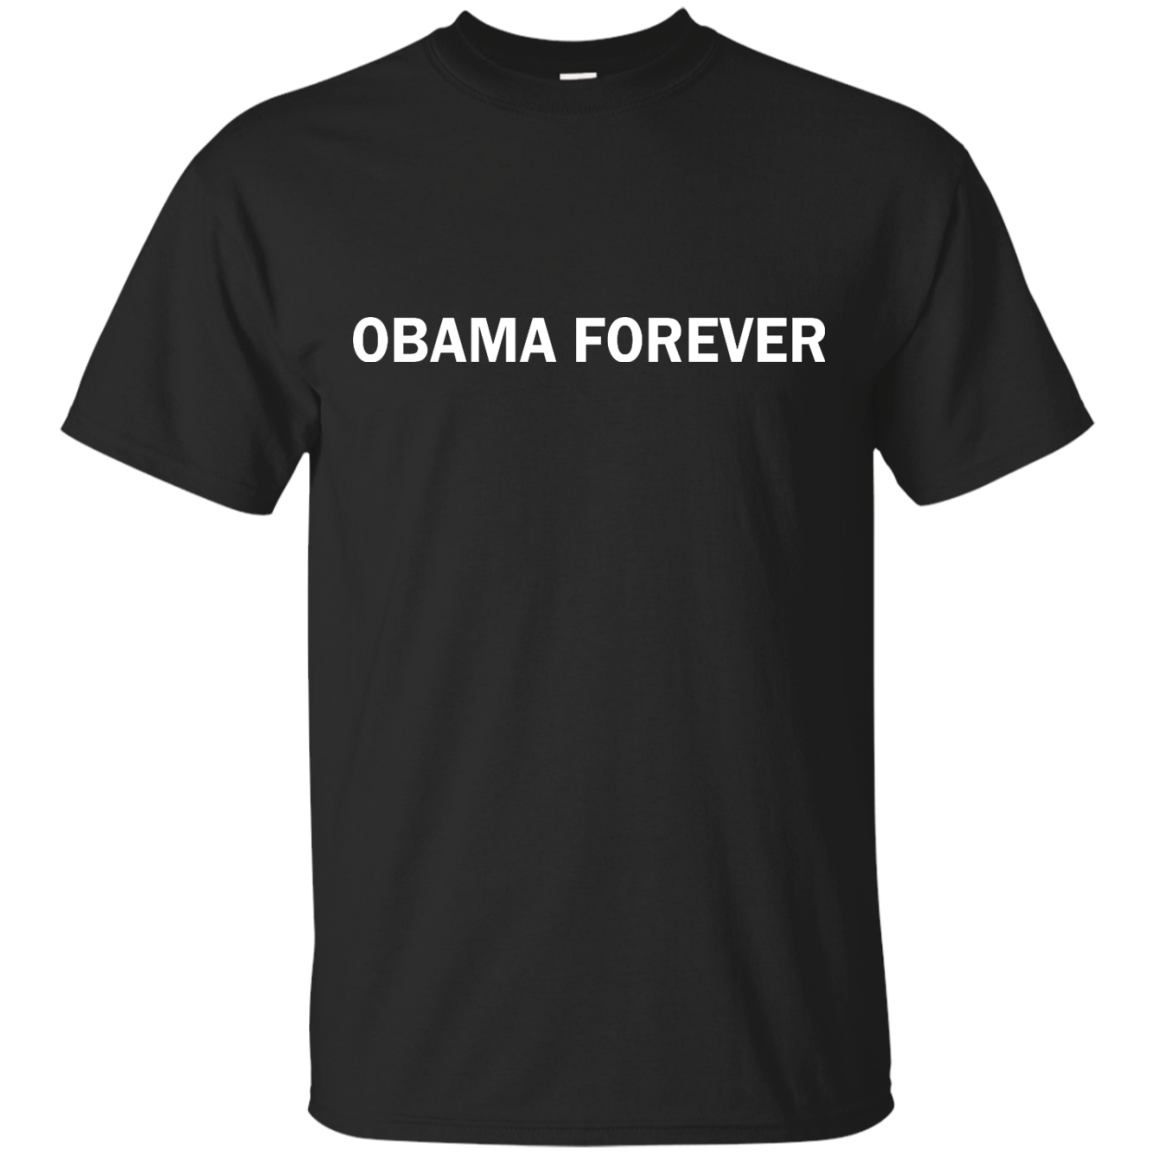 Ariana Grande: Obama Forever shirt